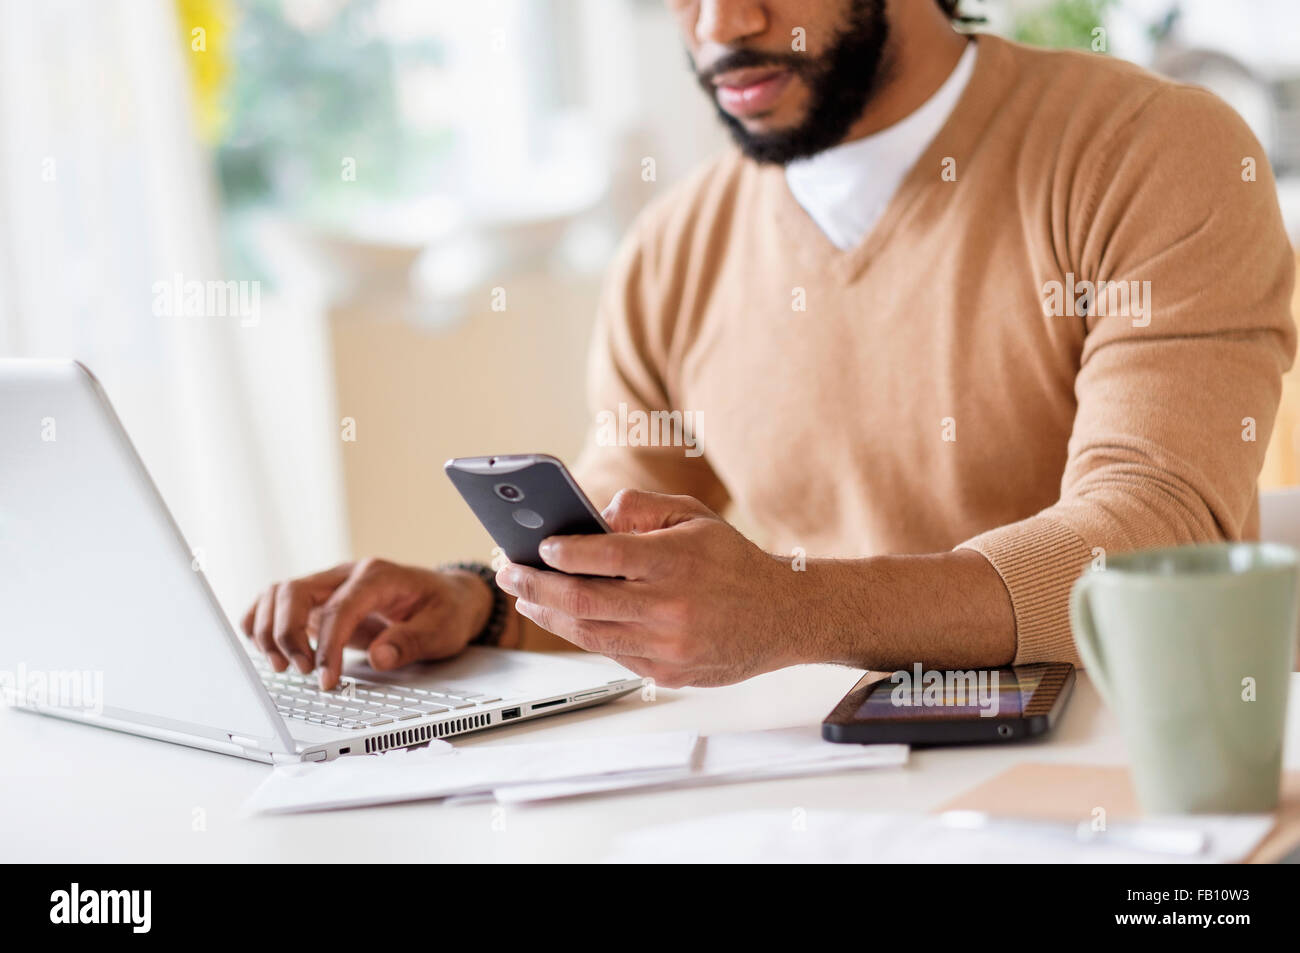 L'homme travaillant avec laptop et holding smart phone Banque D'Images